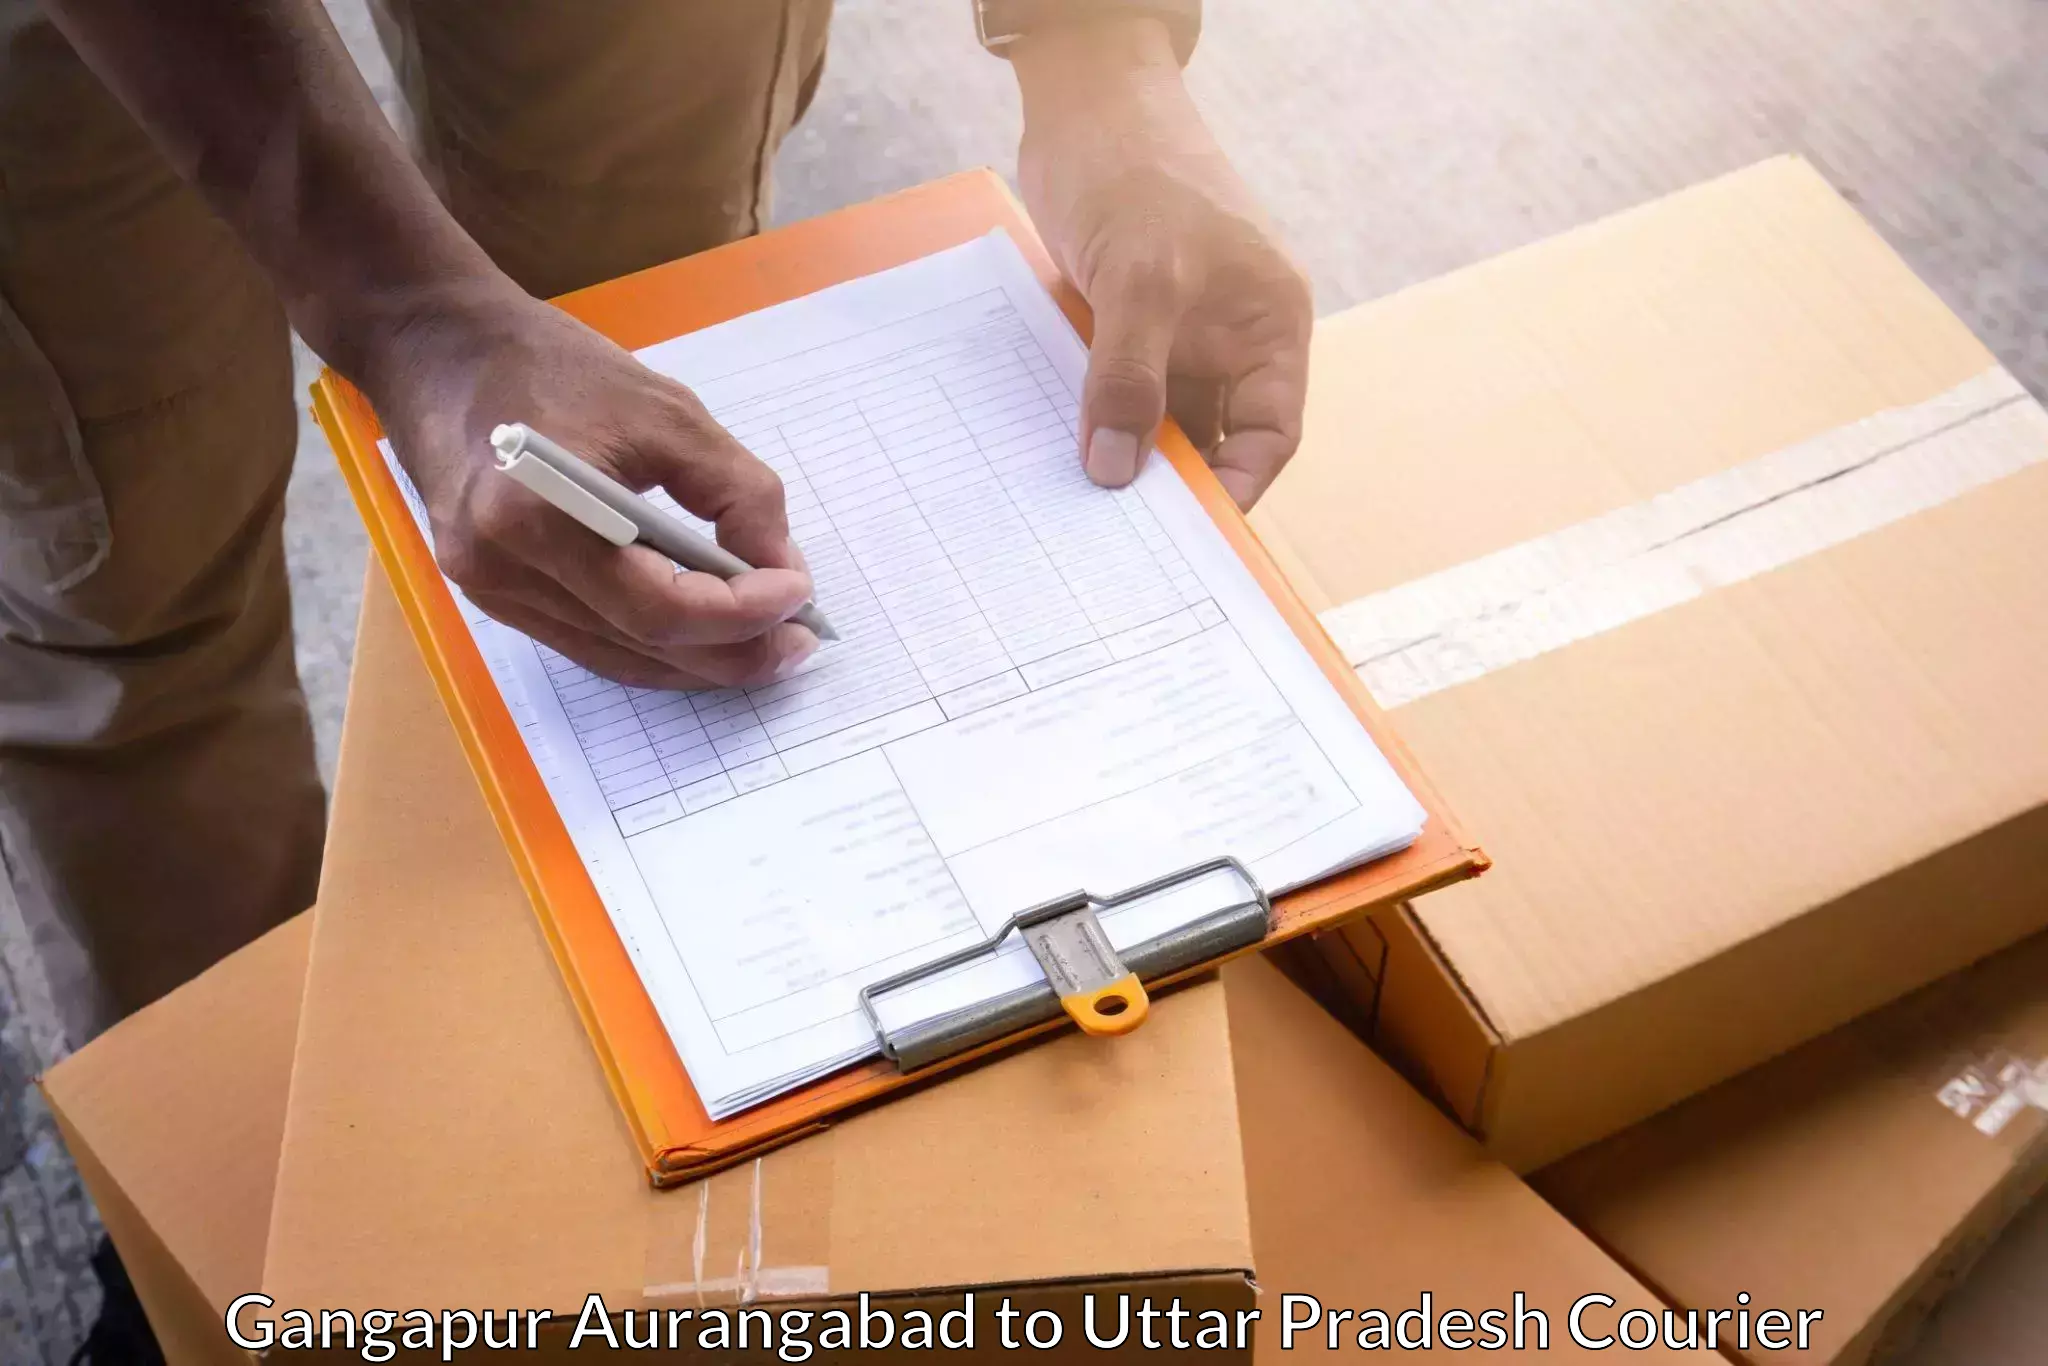 Next-generation courier services Gangapur Aurangabad to Uttar Pradesh